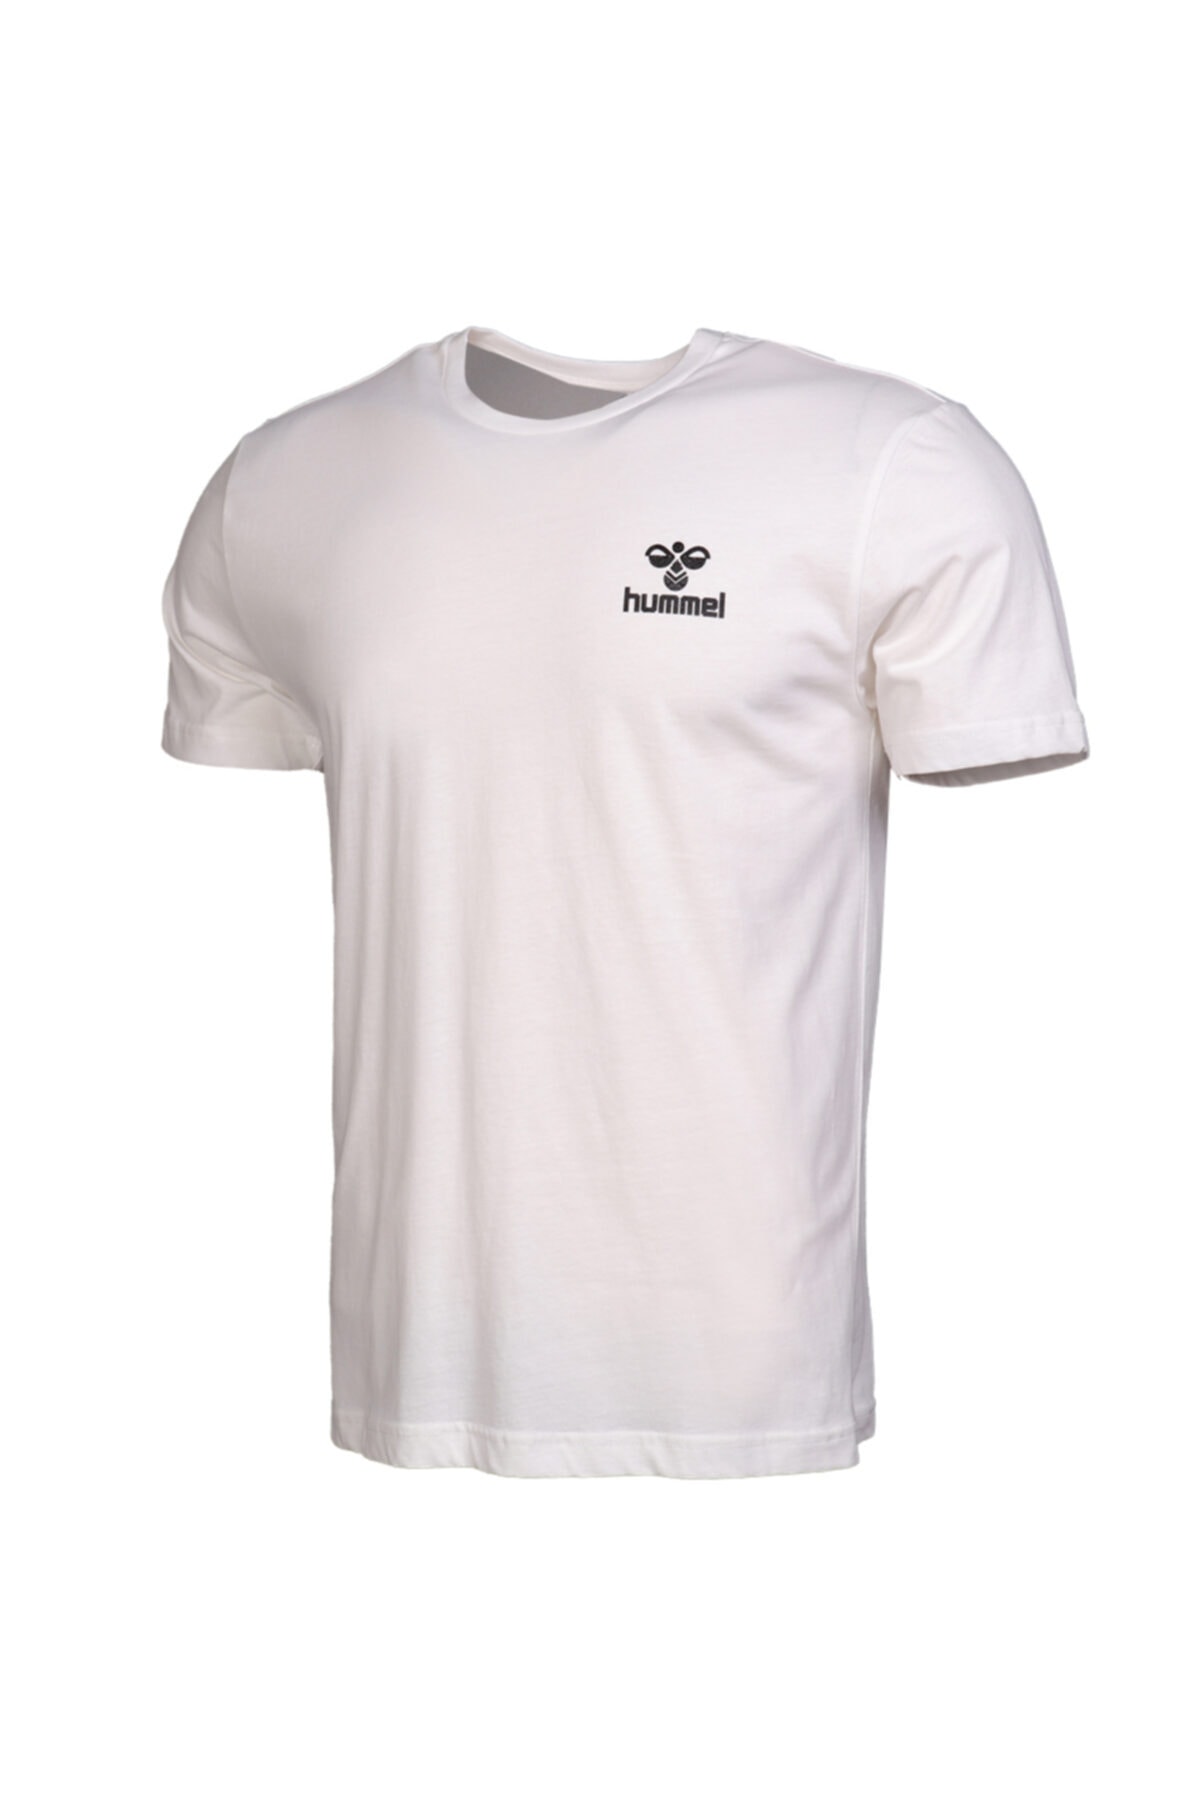 HUMMEL Sport T-Shirt Weiß Regular Fit FN6766